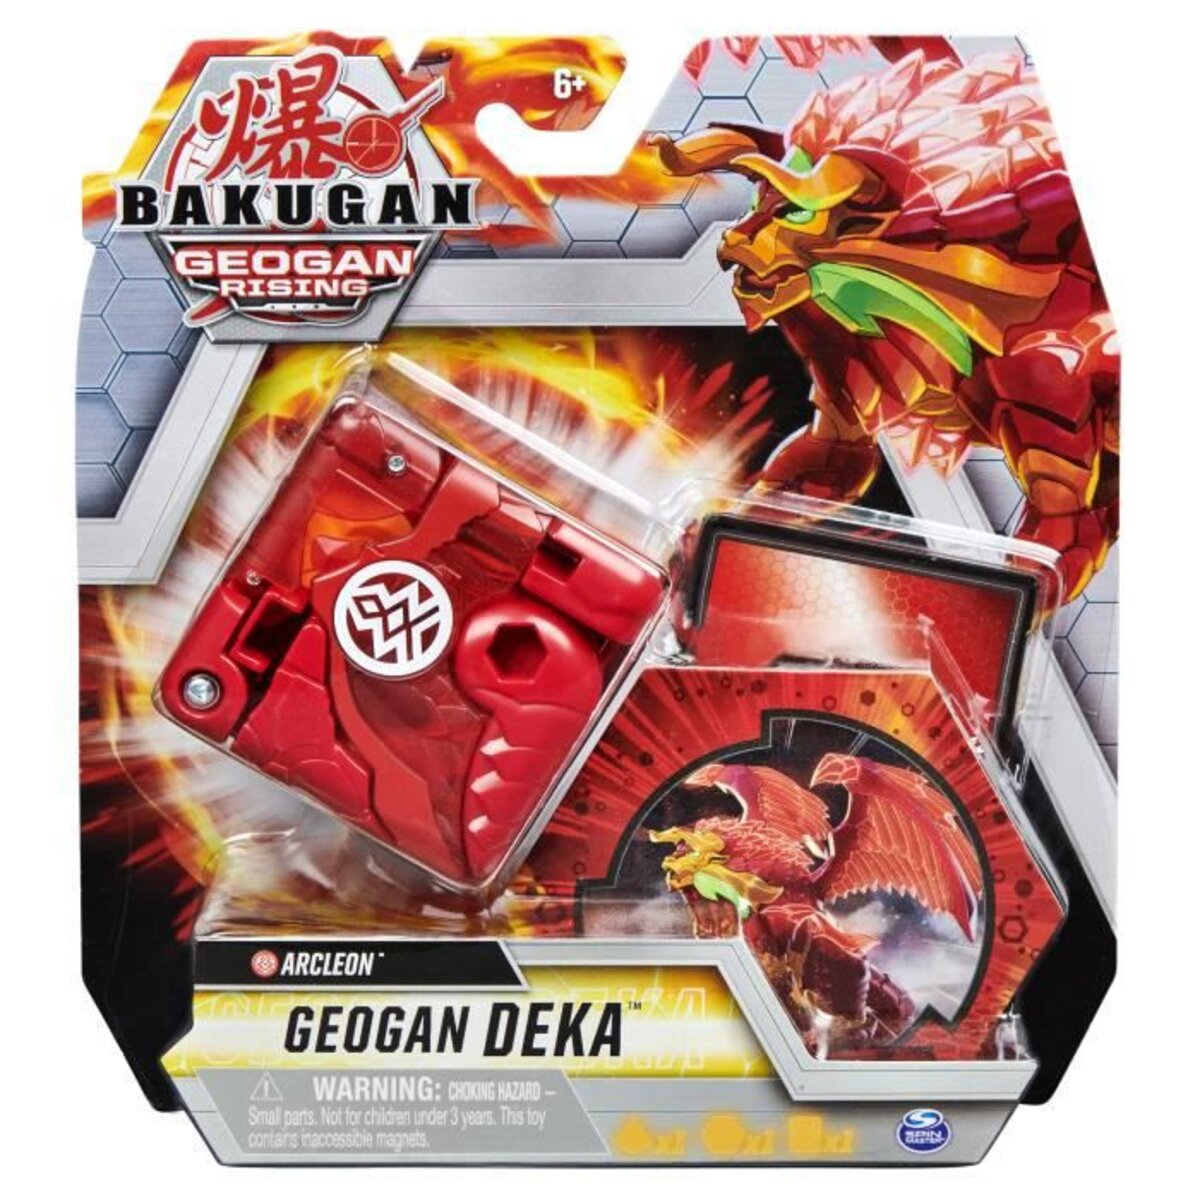 Bakugan geogan deka saison 3 - La Poste